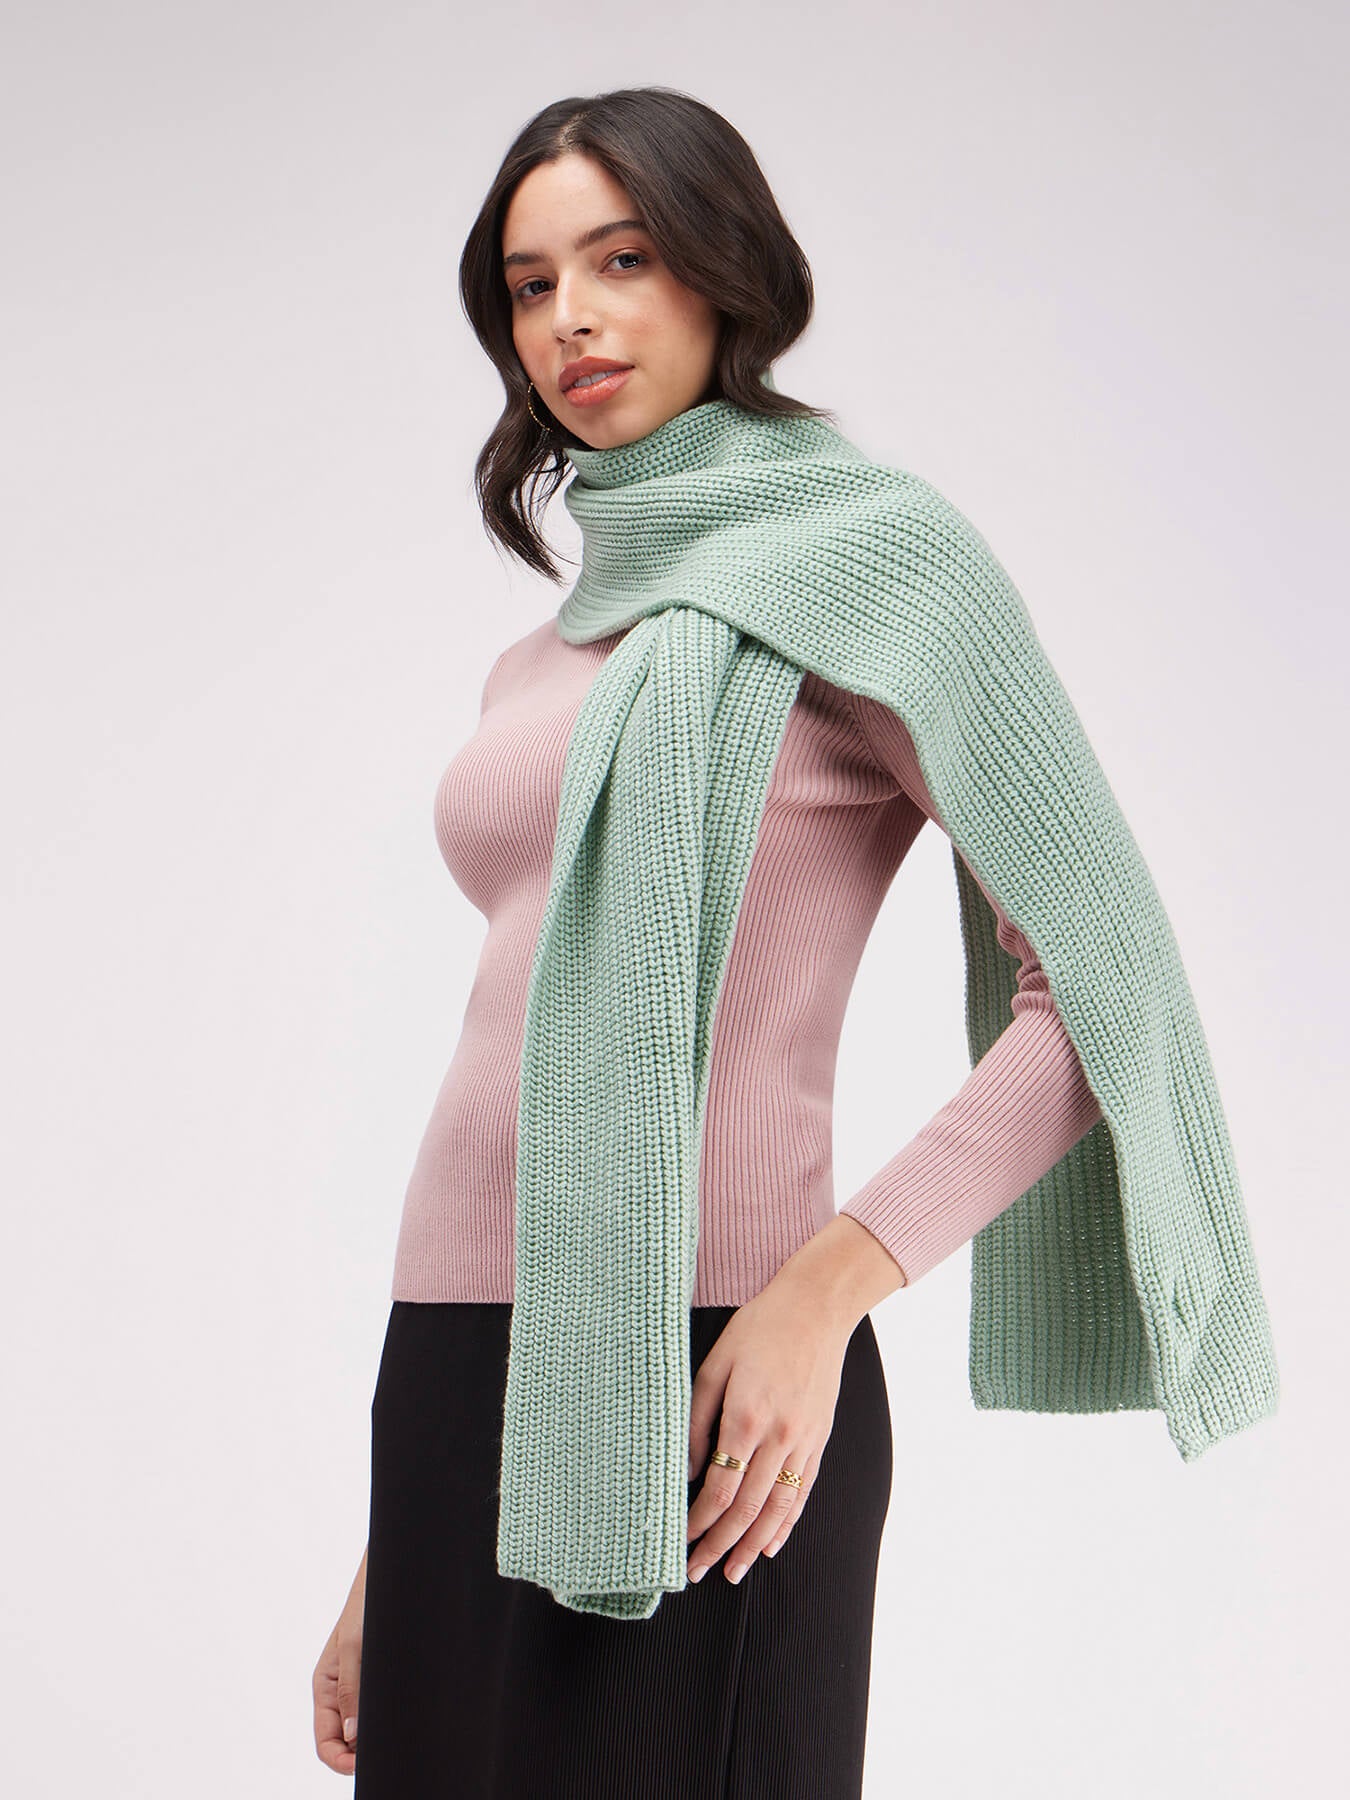 Textured Knit Muffler- Sap Green